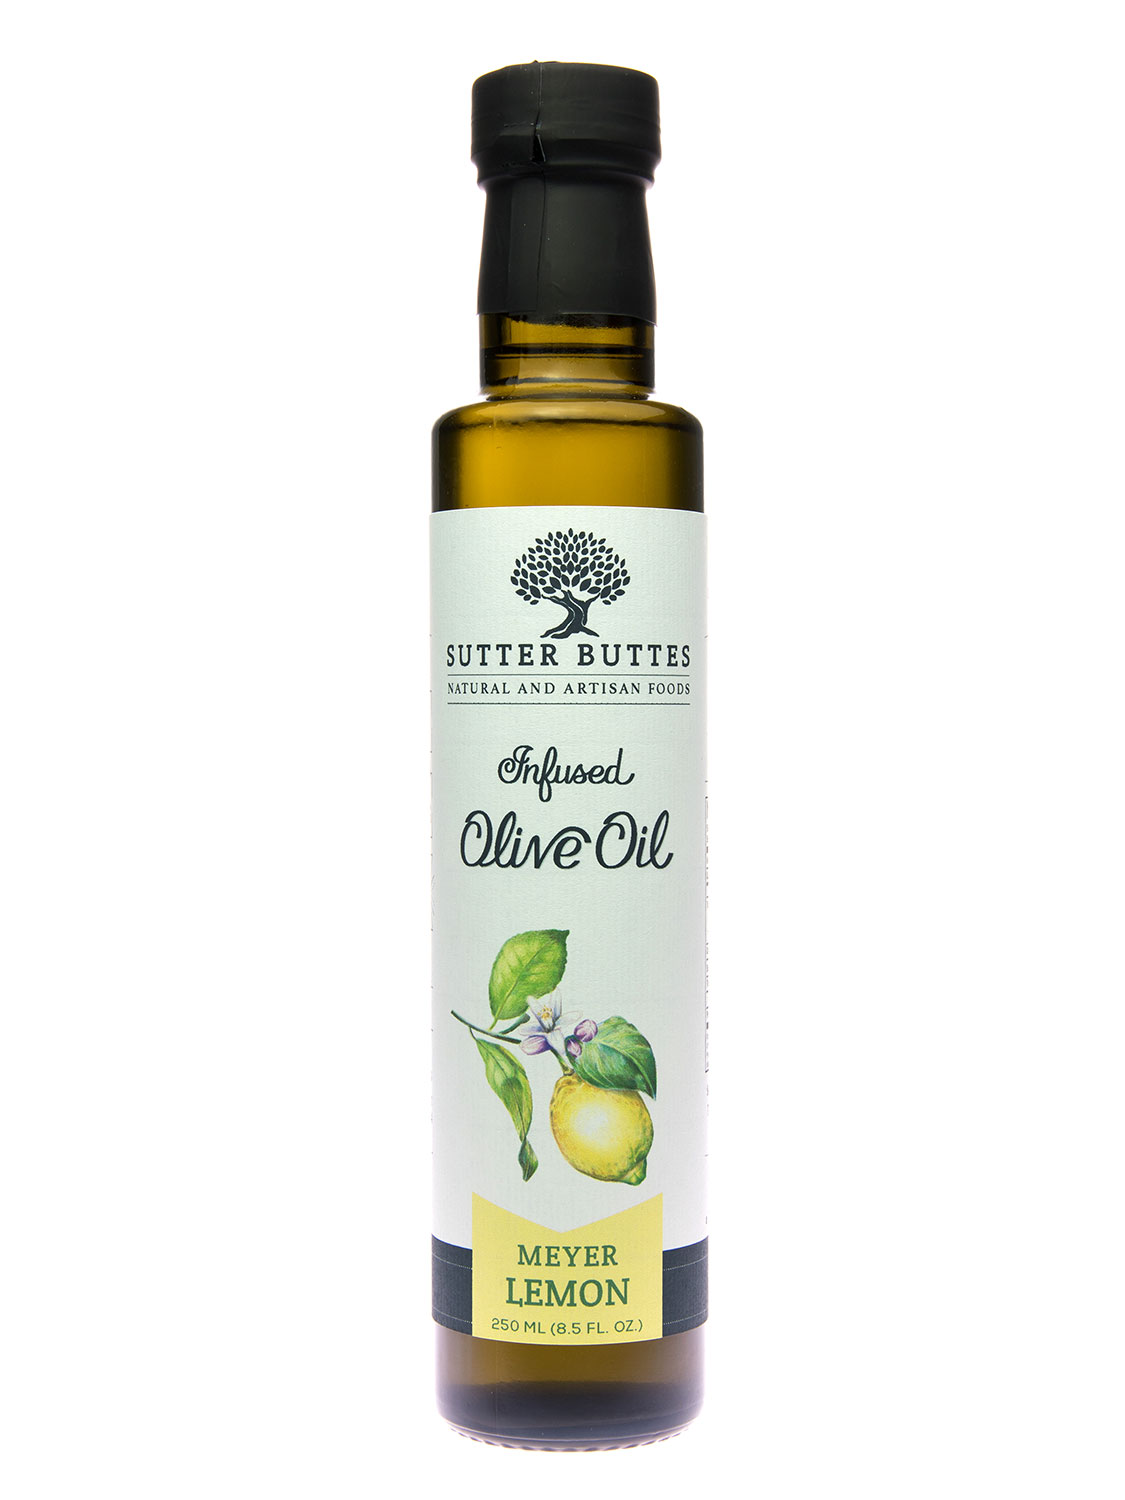 Meyer Lemon Olive Oil - Sutter Buttes Olive Oil Company